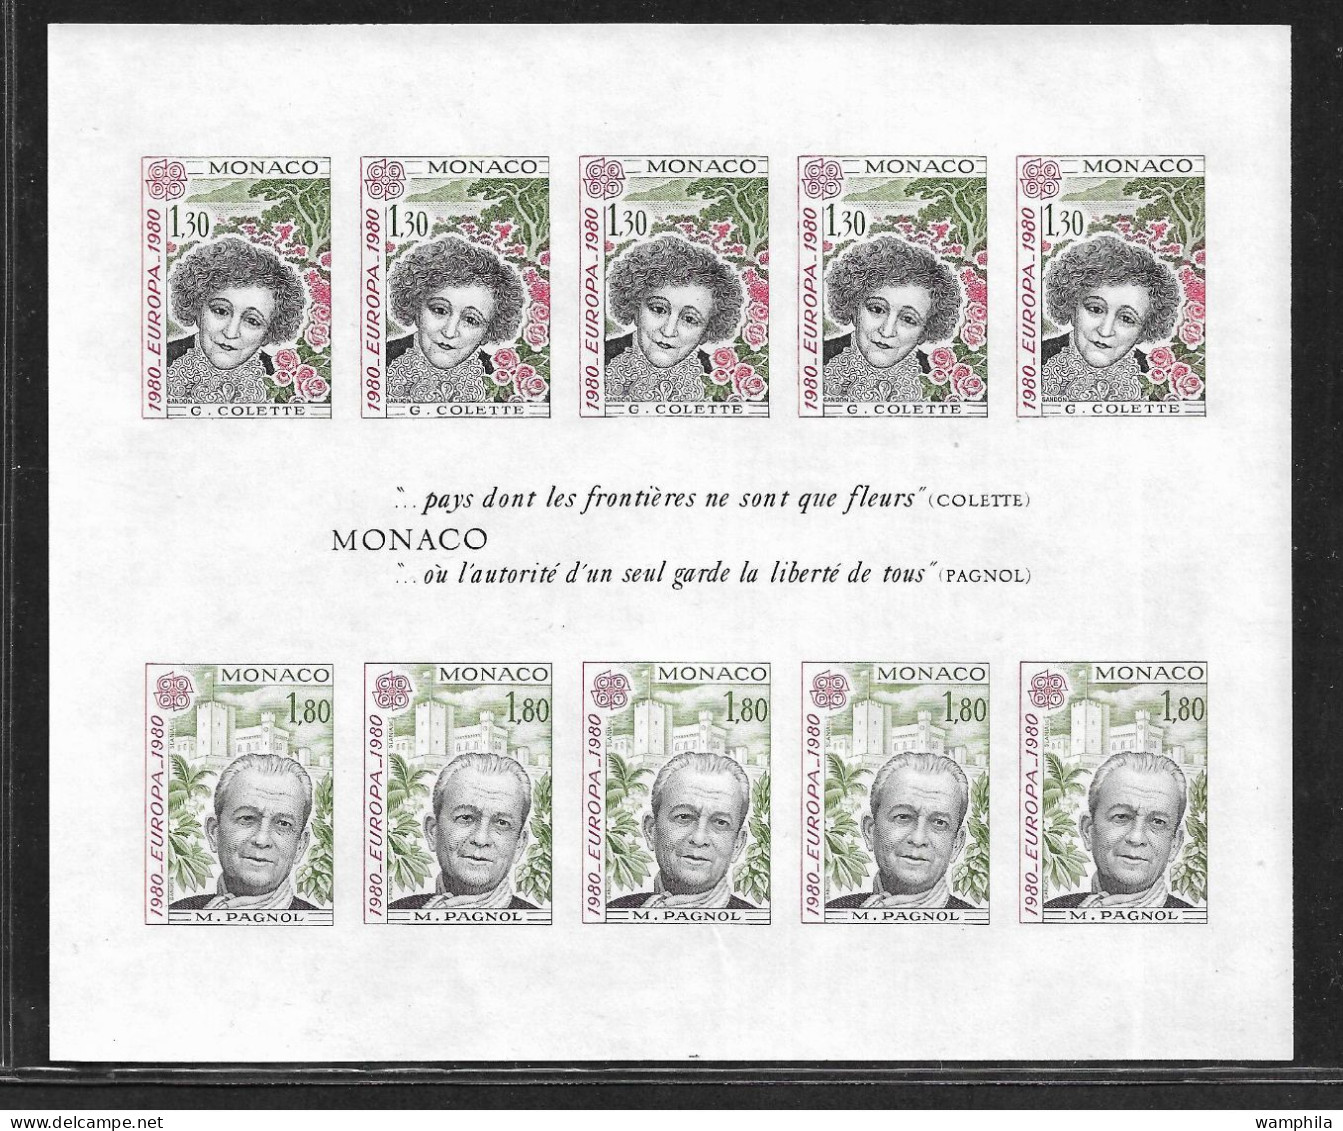 Monaco Bloc N°18a** NON Dentelé. Europa 1980 (S.G.Colette, M.Pagnol). RARE. Cote 540€ - Abarten